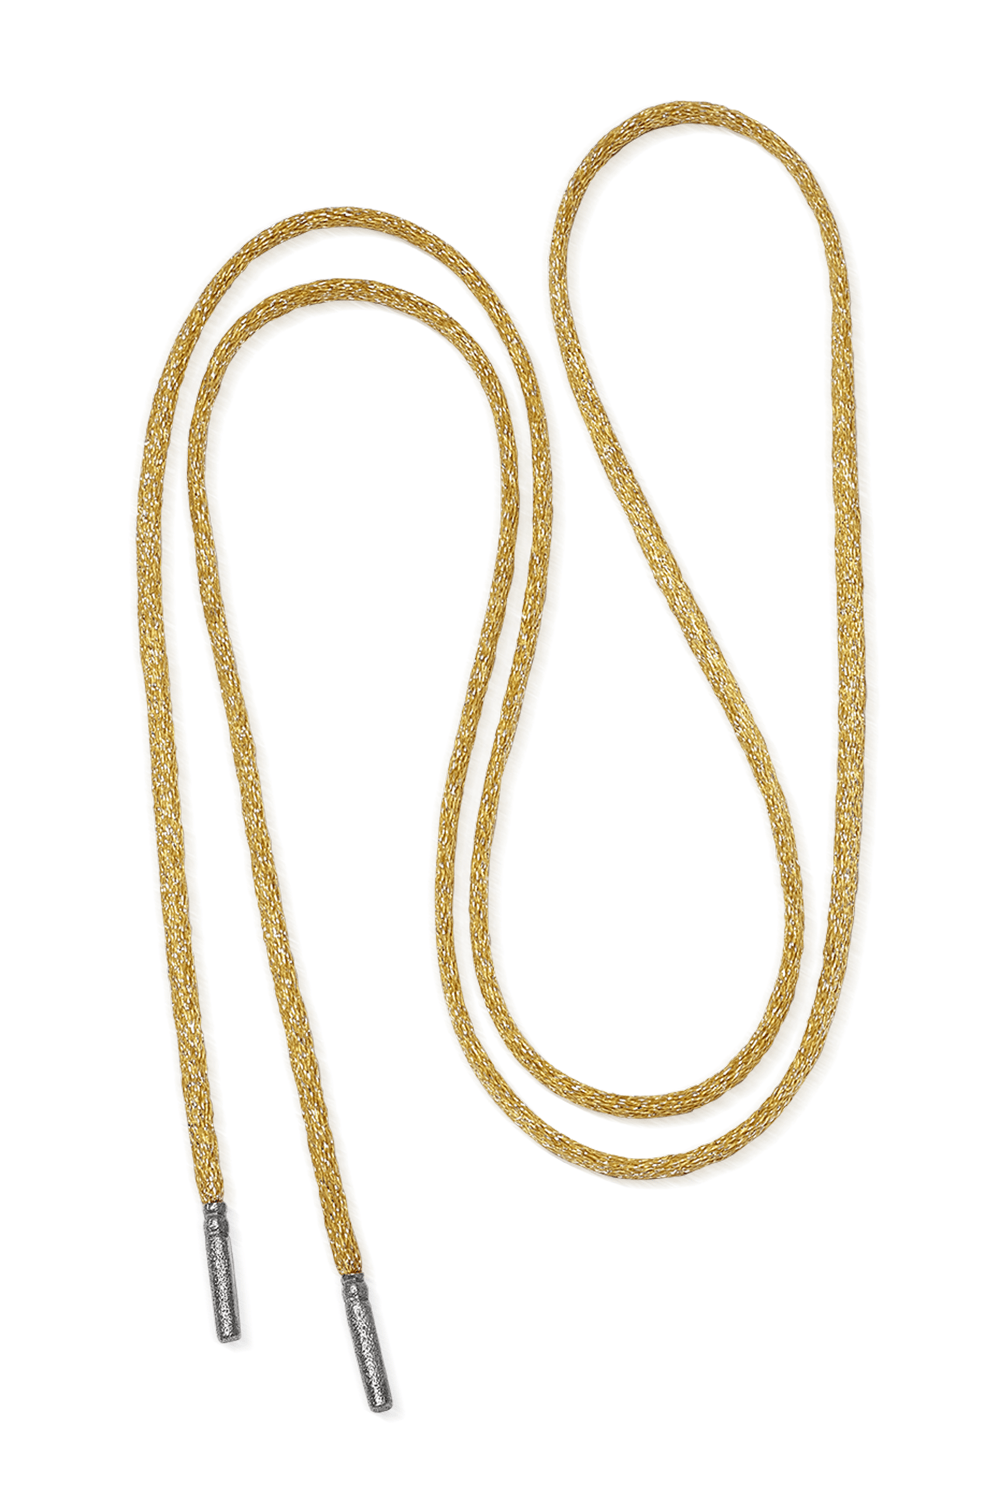 CAROLINA BUCCI-Long Forte Beads Cord - Sun-BLACK GOLD